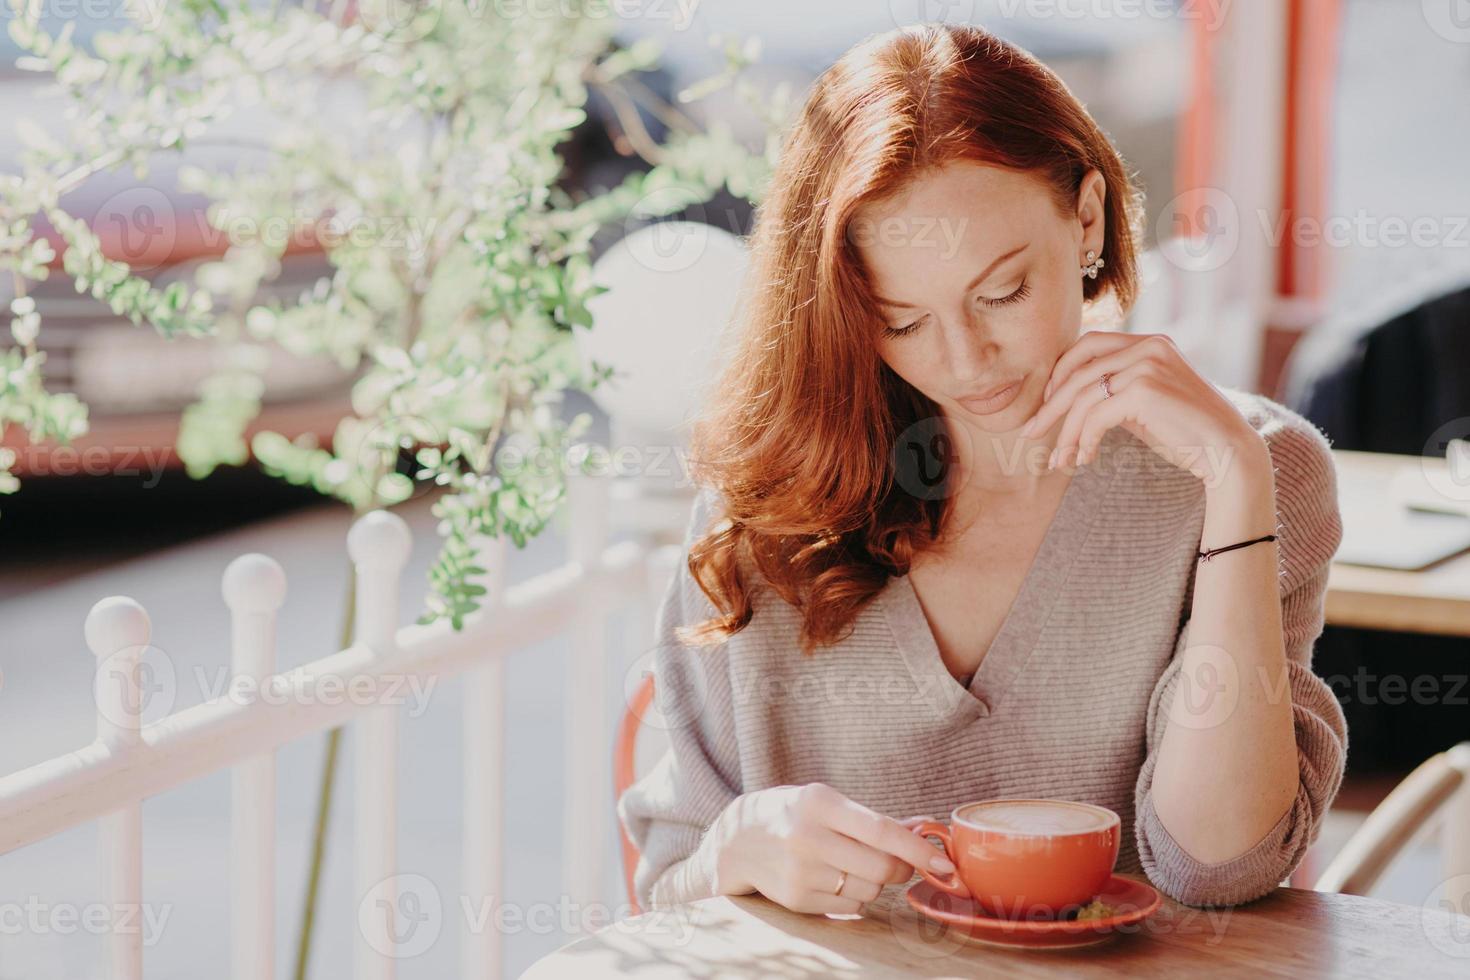 charmante femme européenne aux cheveux rouges boit du cappuccino ou du café sur la terrasse du café, a une expression faciale calme, porte un pull marron, se maquille, apprécie une bonne boisson. concept de personnes et de style de vie. photo